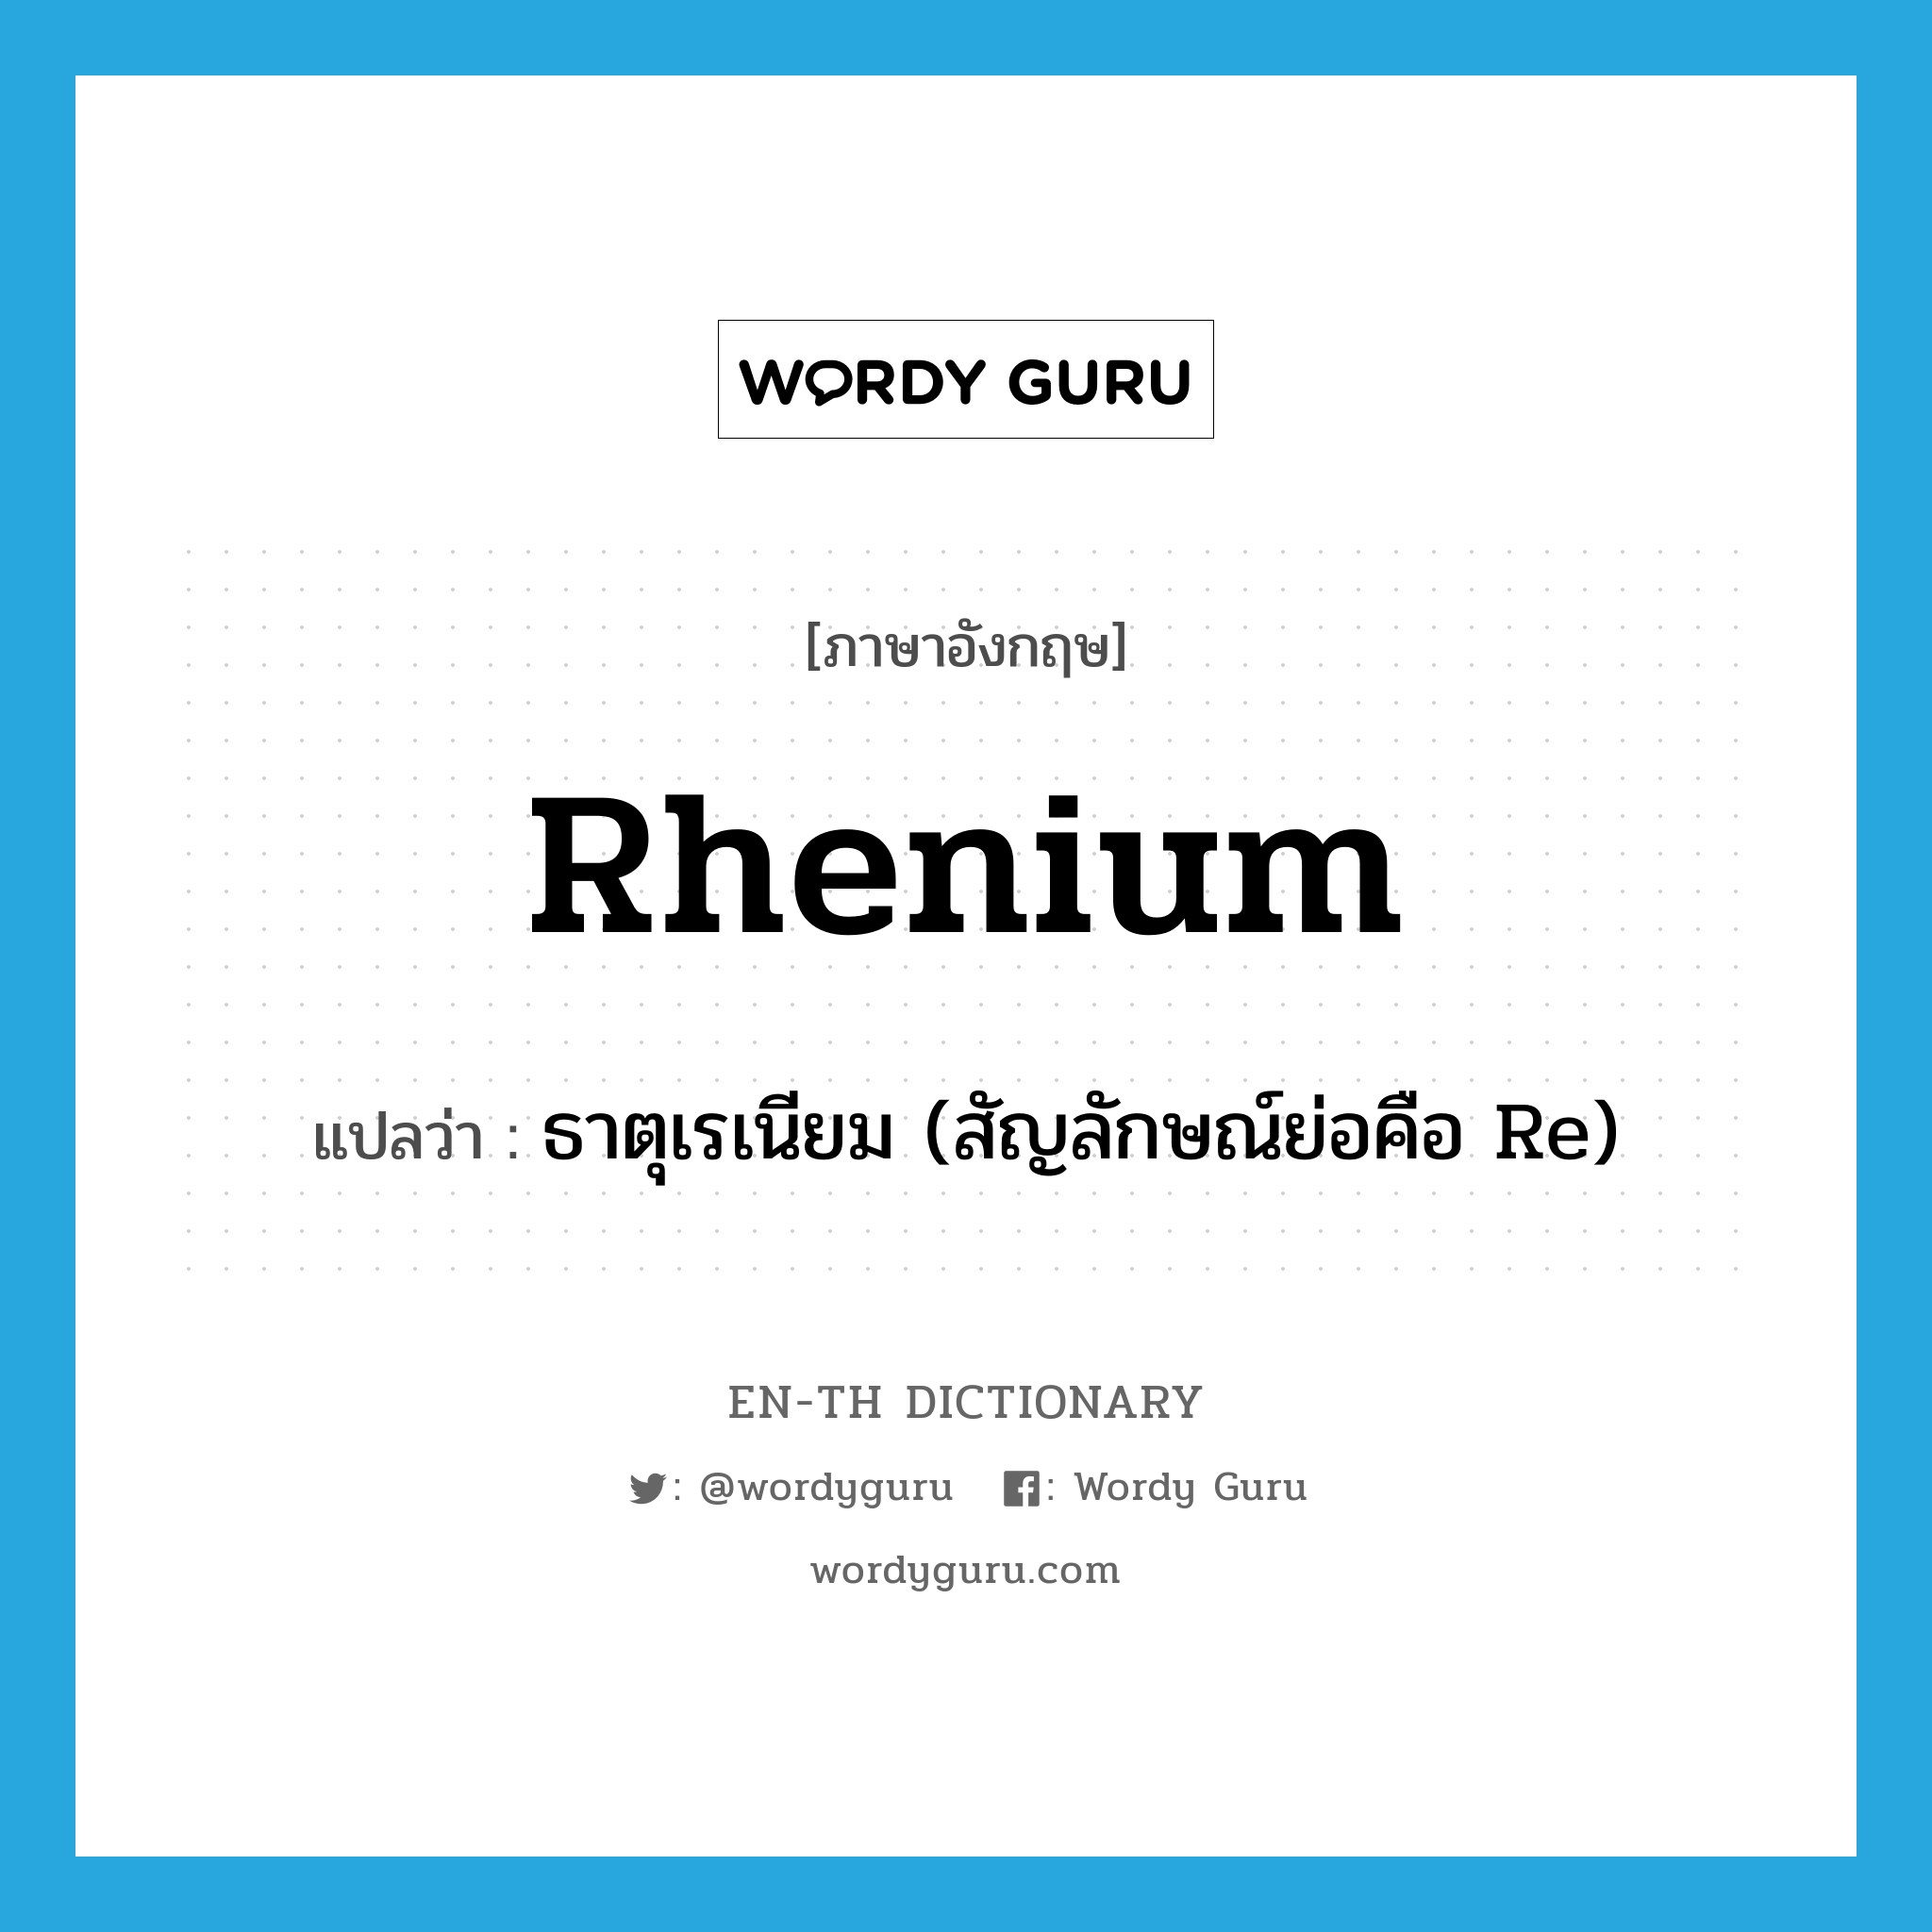 ธาตุเรเนียม (สัญลักษณ์ย่อคือ Re) ภาษาอังกฤษ?, คำศัพท์ภาษาอังกฤษ ธาตุเรเนียม (สัญลักษณ์ย่อคือ Re) แปลว่า rhenium ประเภท N หมวด N